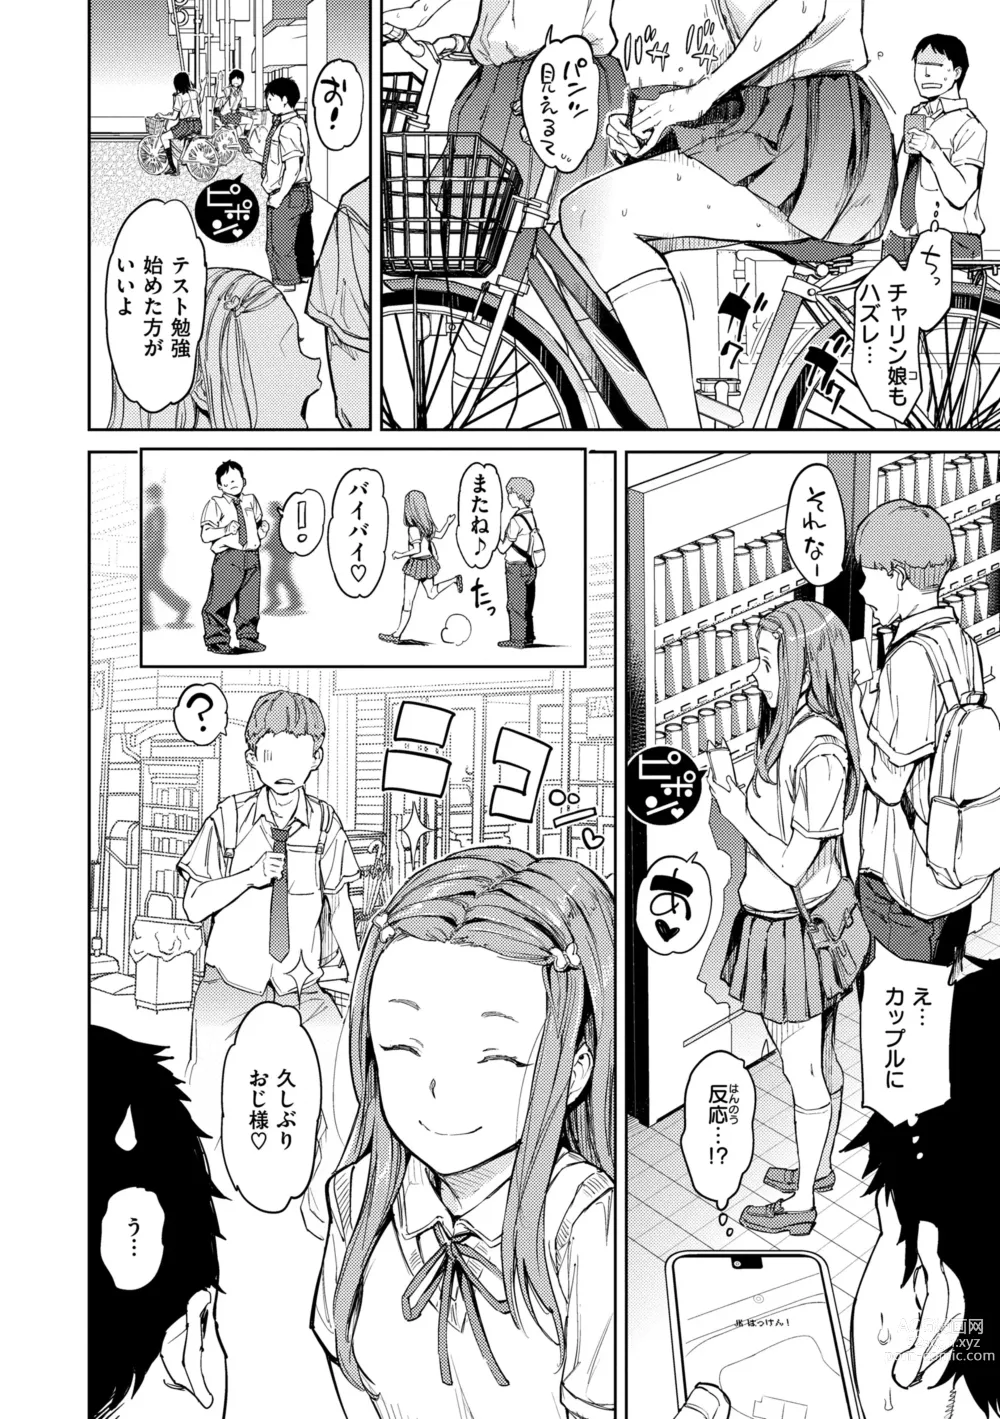 Page 14 of manga Gyouretsu no Dekiru Shoujo - The girl makes a lot of guys erect.